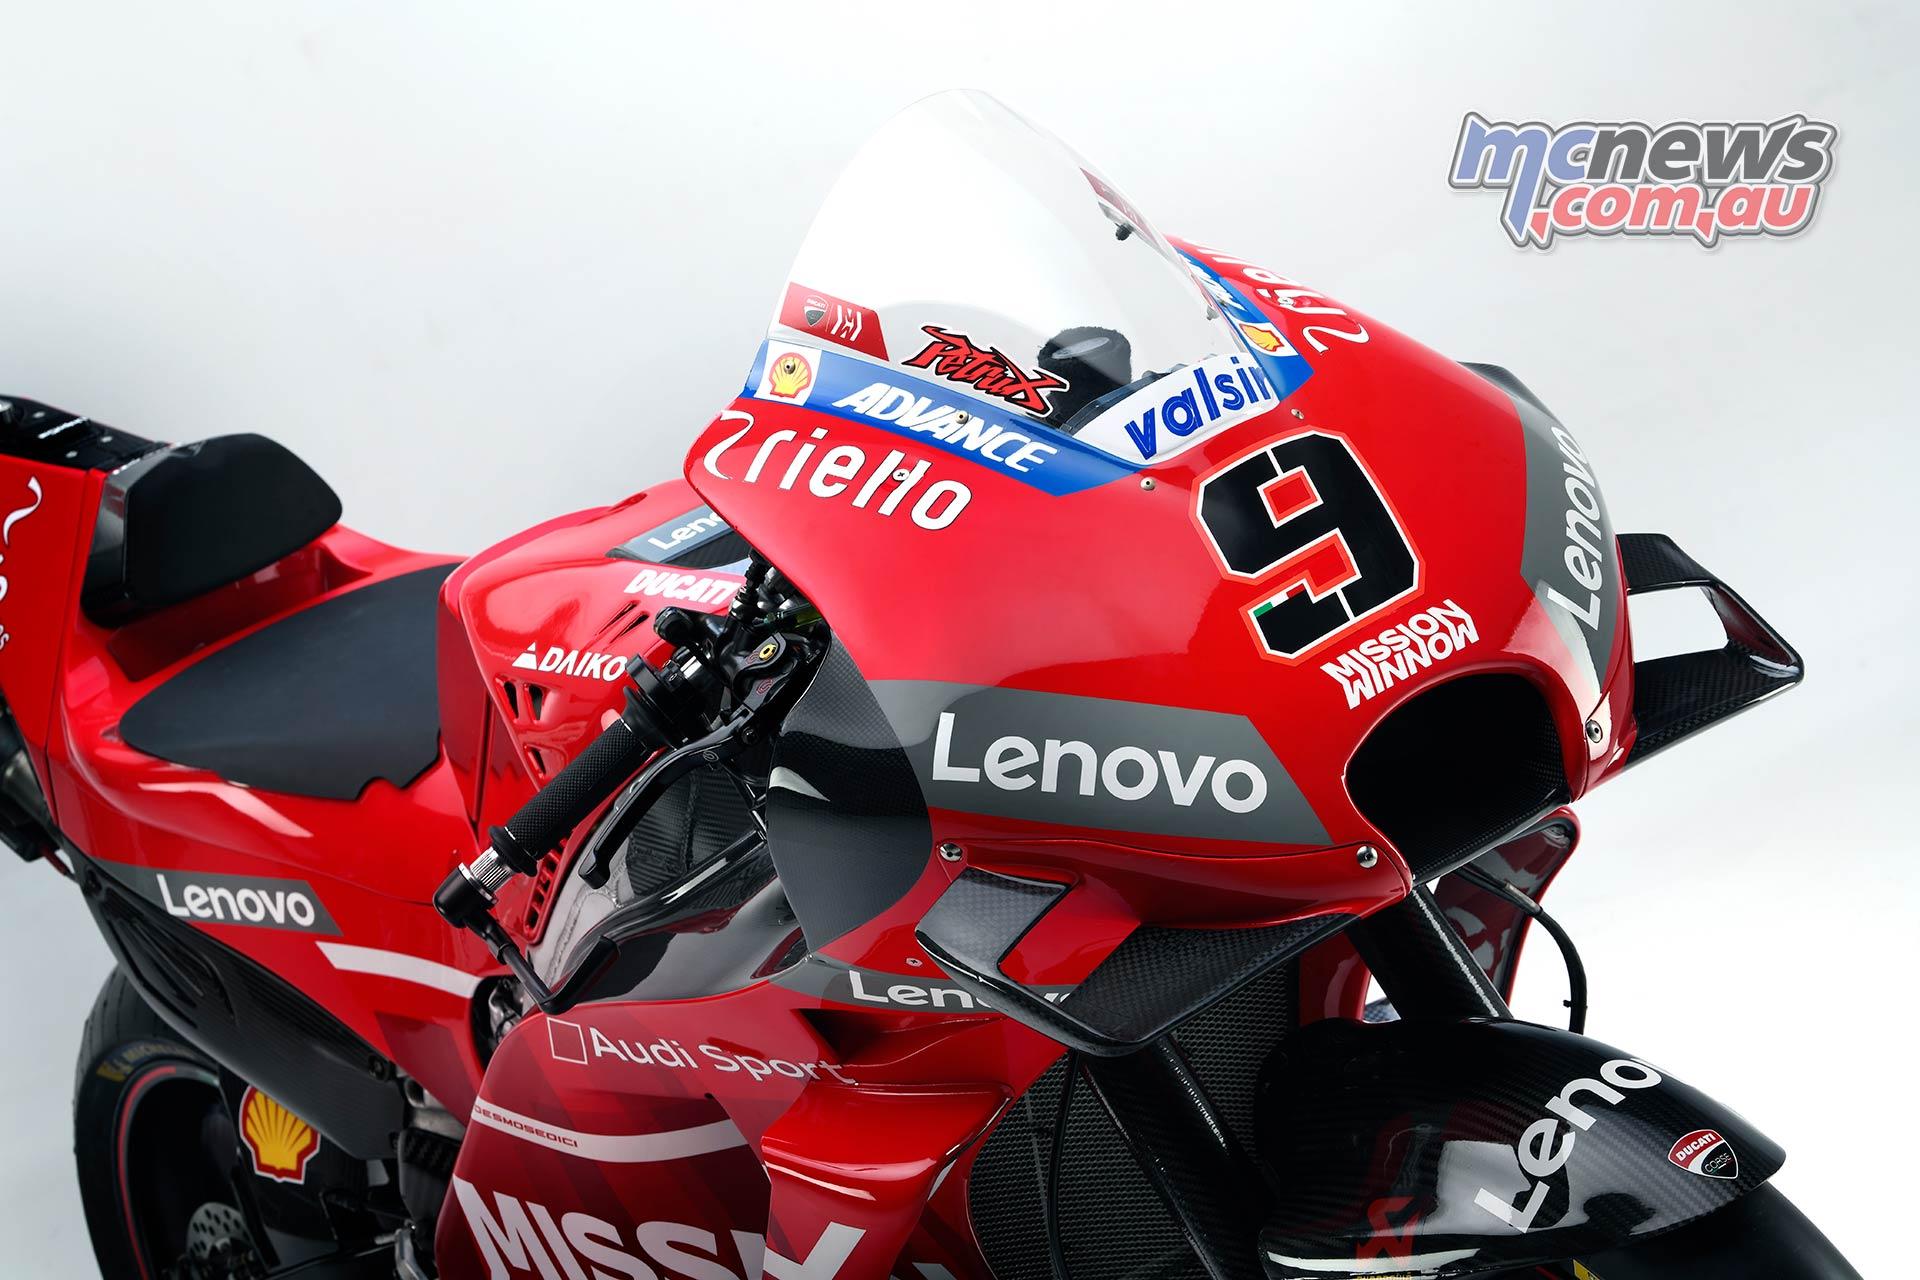 Ducati Desmosedici GP19. Image in detail